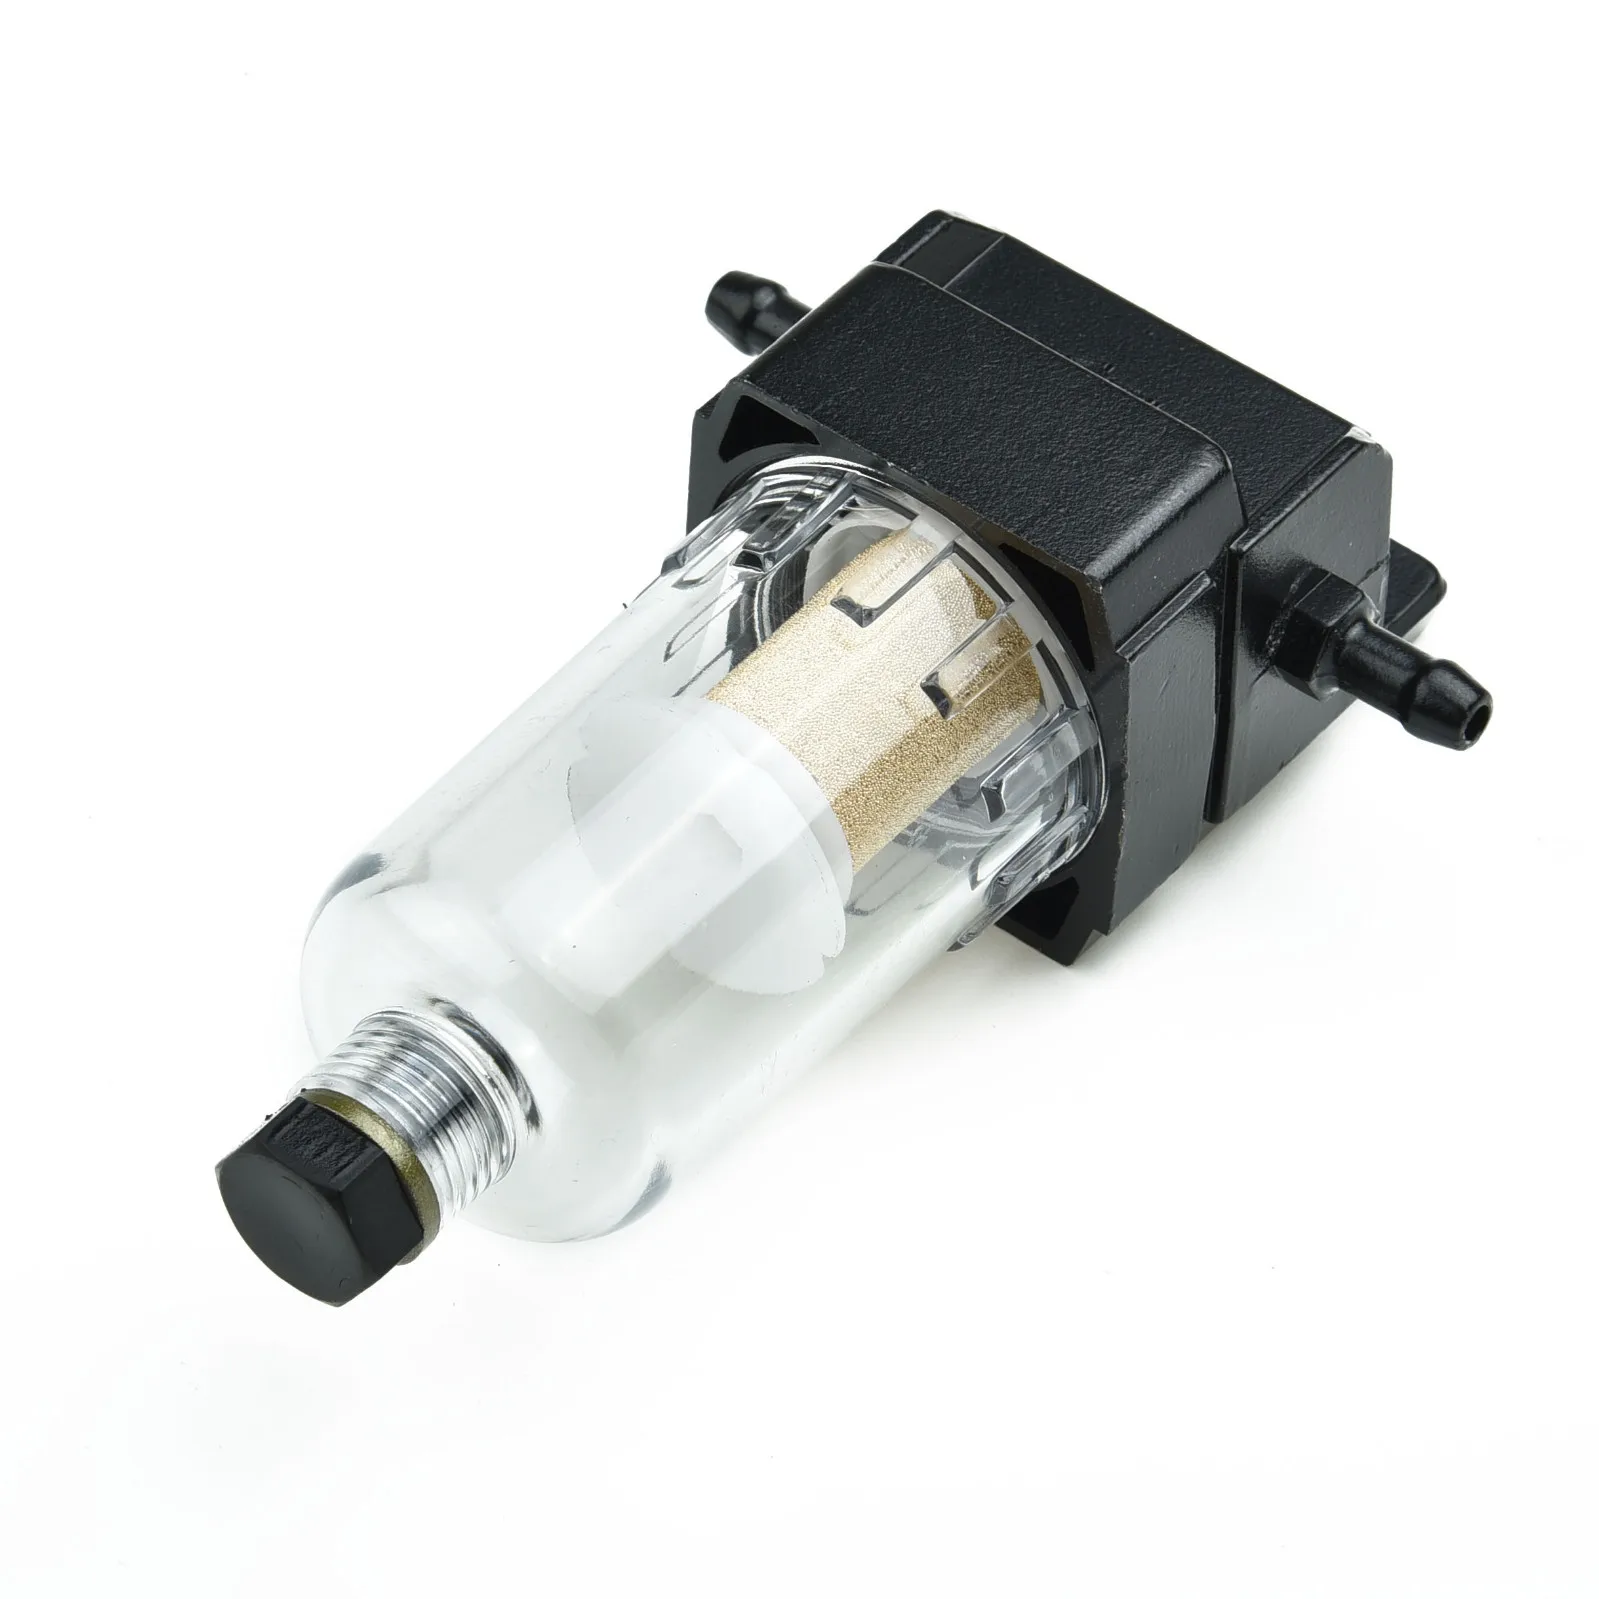 1 шт. Автомобильный топливный фильтр/Водоотделитель Комплект для Webasto Eberspacher 6 мм Высококачественный ABS Авто Аксессуары для замены автомобилей . ' - ' . 2